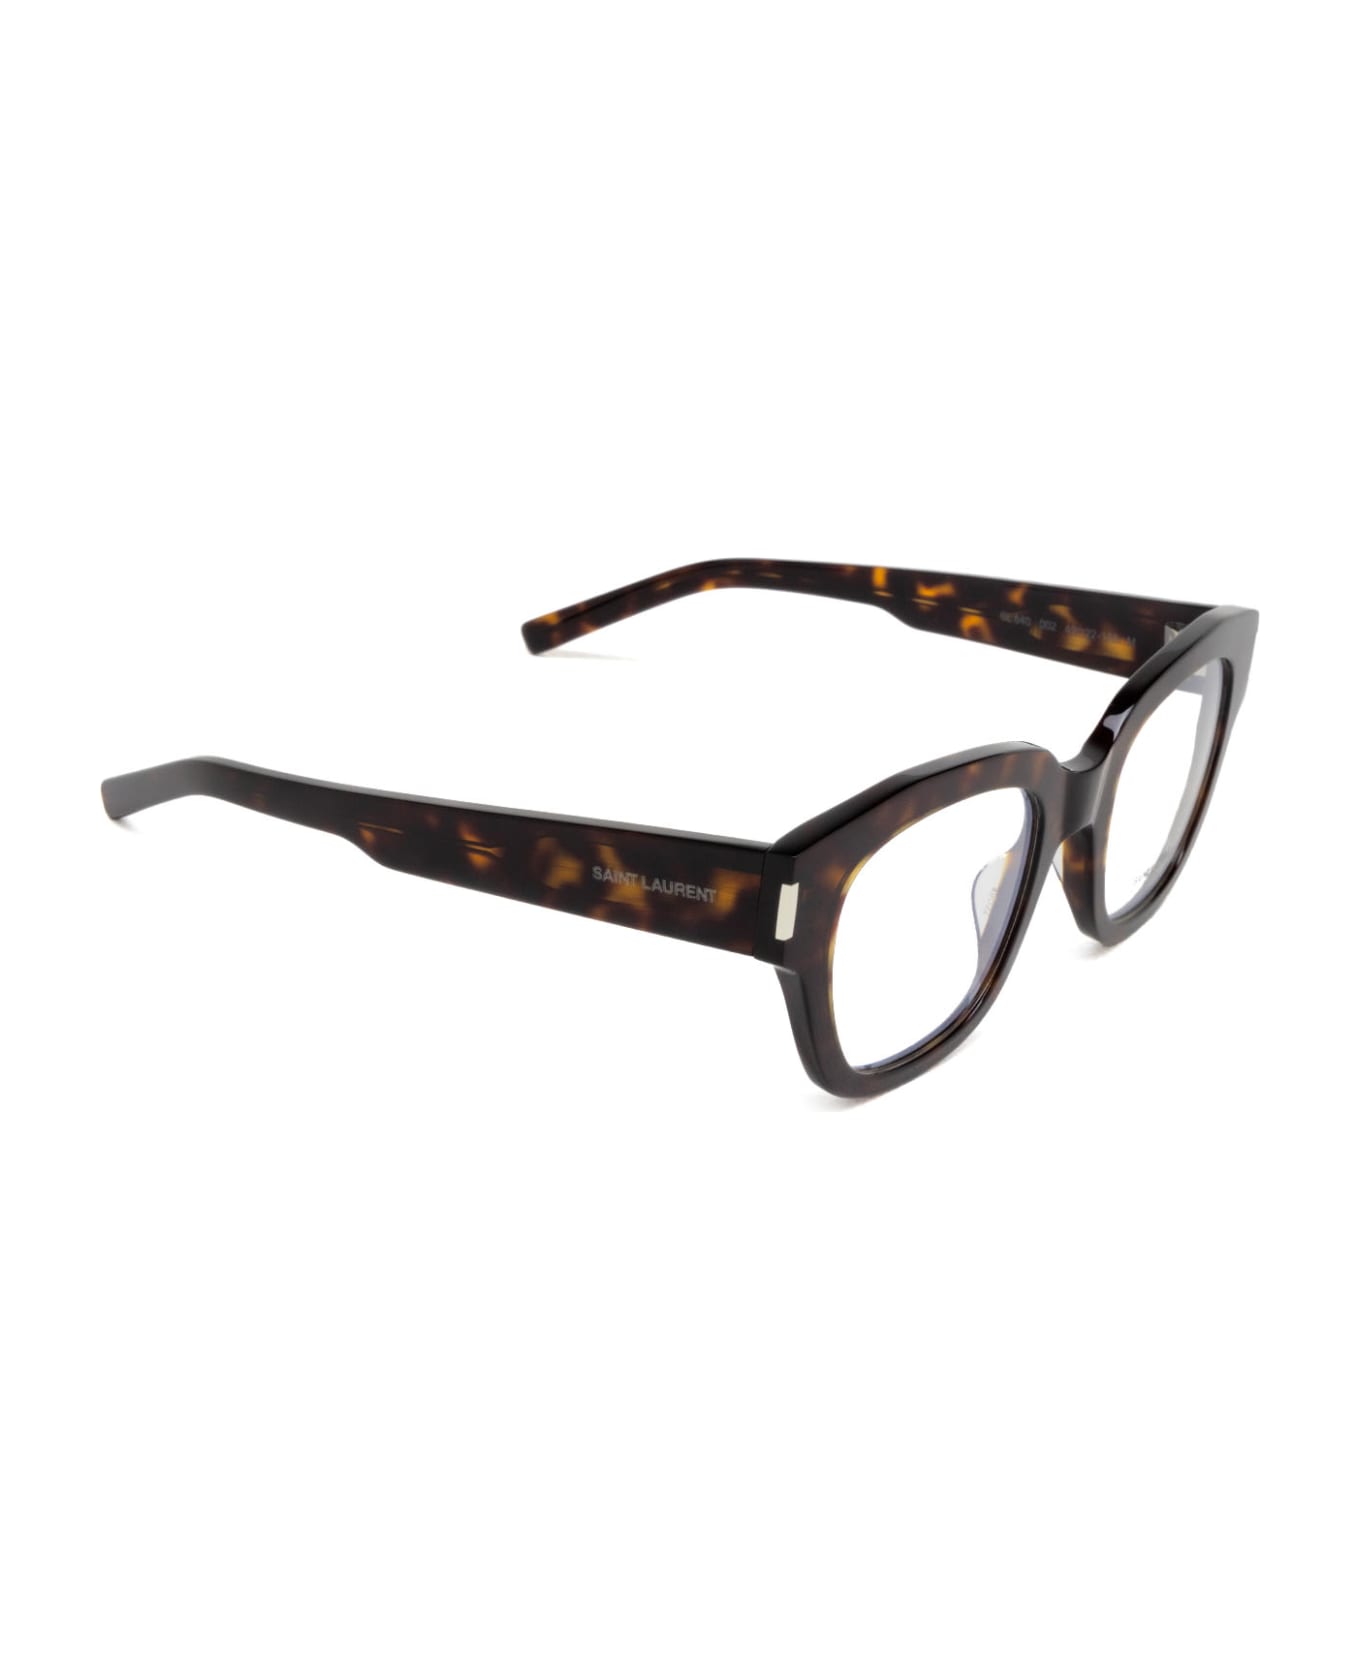 Saint Laurent Eyewear Sl 640 Havana Glasses - Havana アイウェア